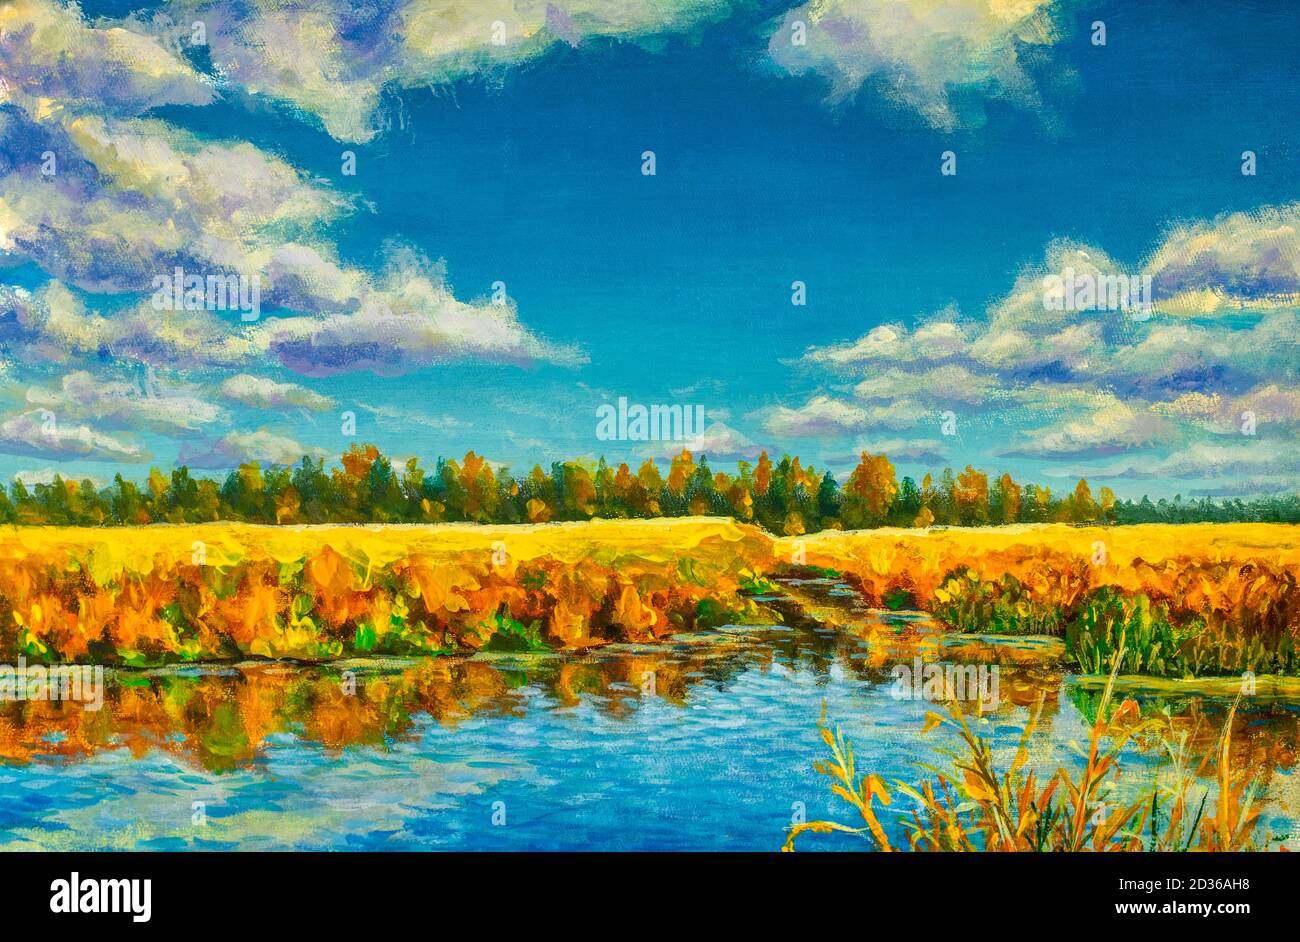 Huile acrylique peinture or automne sur rivière mer étang eau. Orangers reflétés dans l'eau bleue illustration moderne des beaux-arts sur toile Banque D'Images